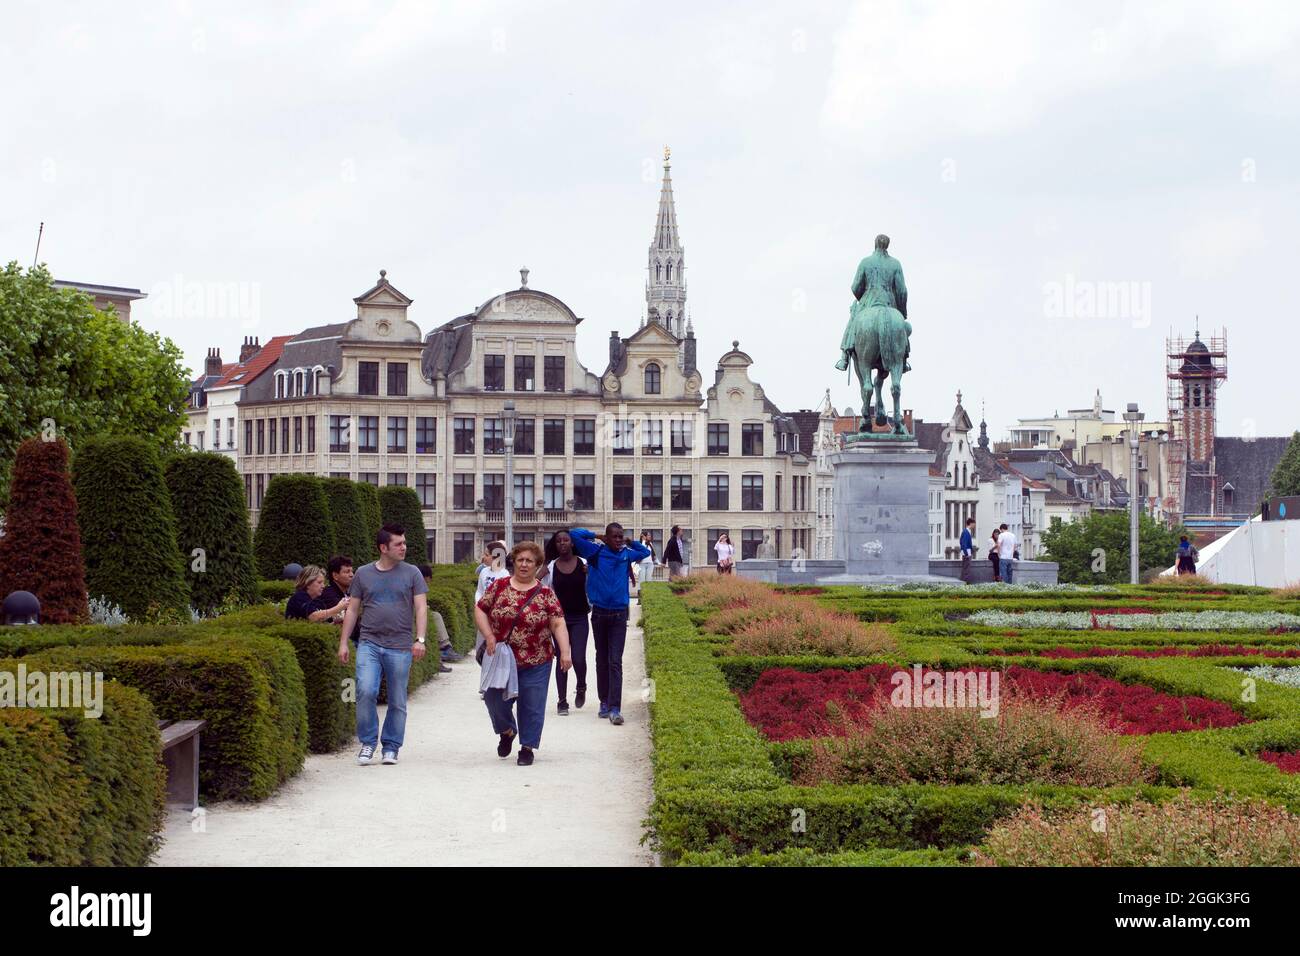 Bruxelles, Belgio - 16 giugno 2013: I pedoni che camminano nel giardino delle arti del Mont des nel centro di Bruxelles in una giornata estiva. Foto Stock